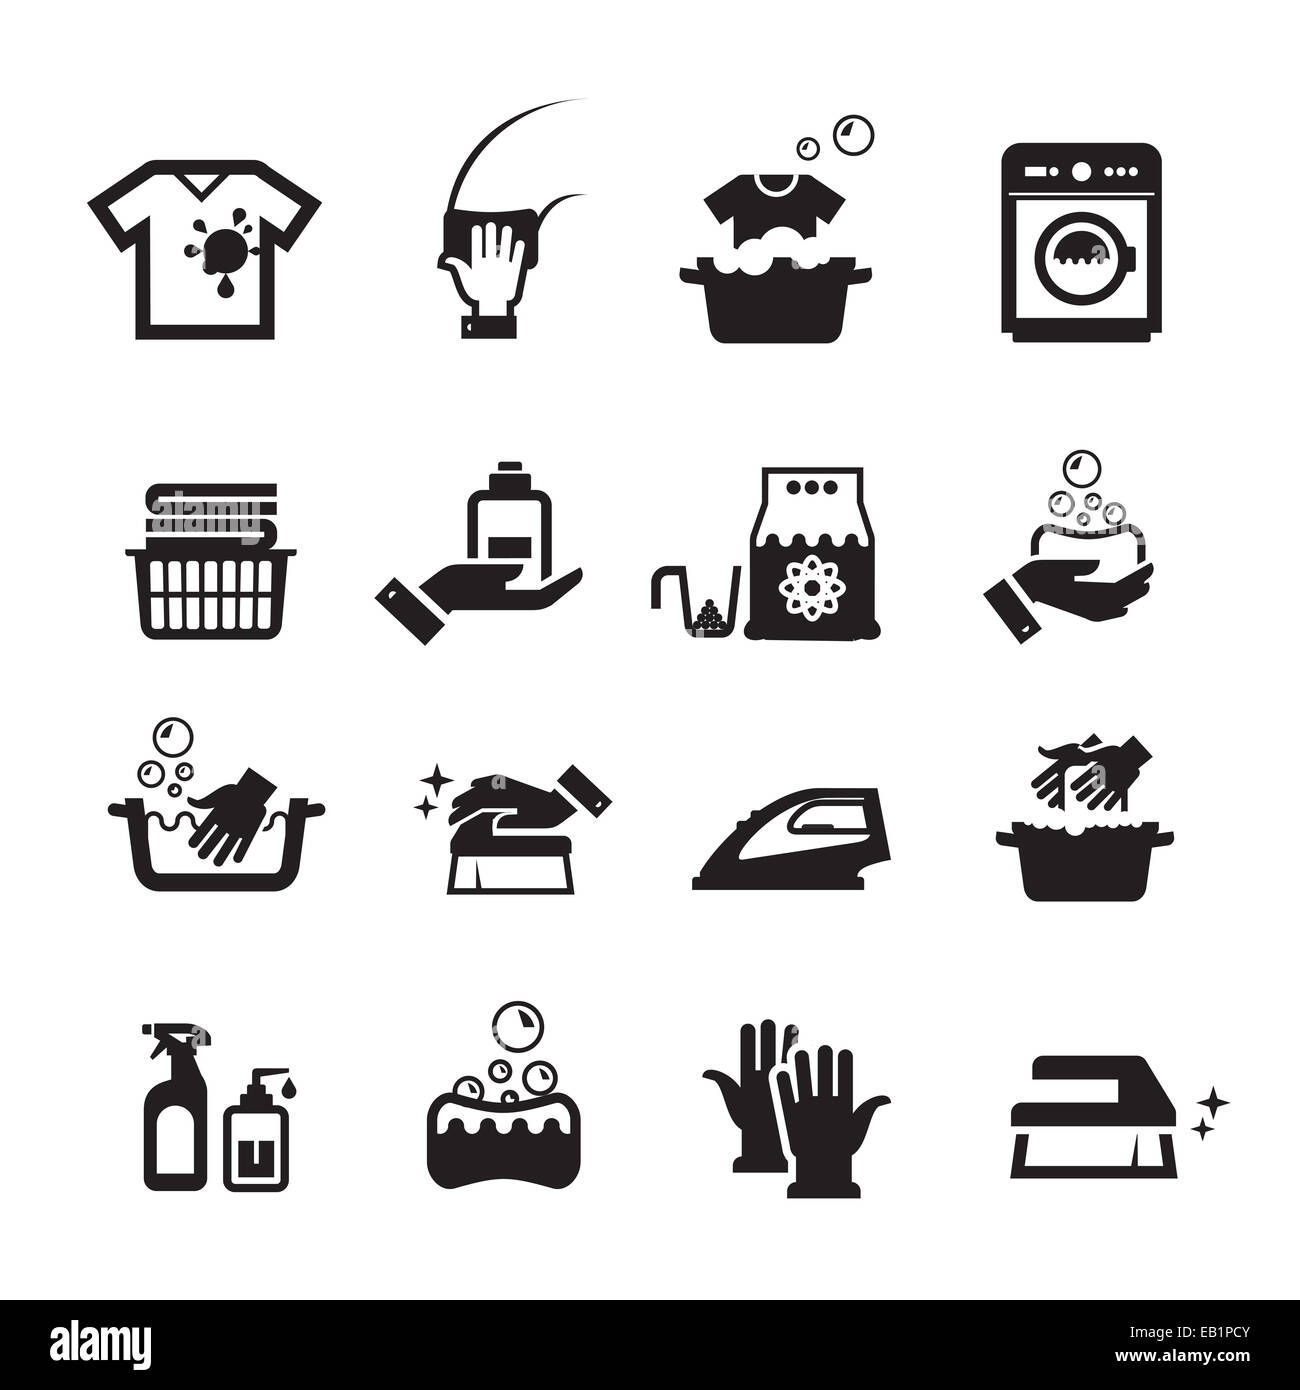 Laundry washing icons set. Collection of icons on white background Stock Photo